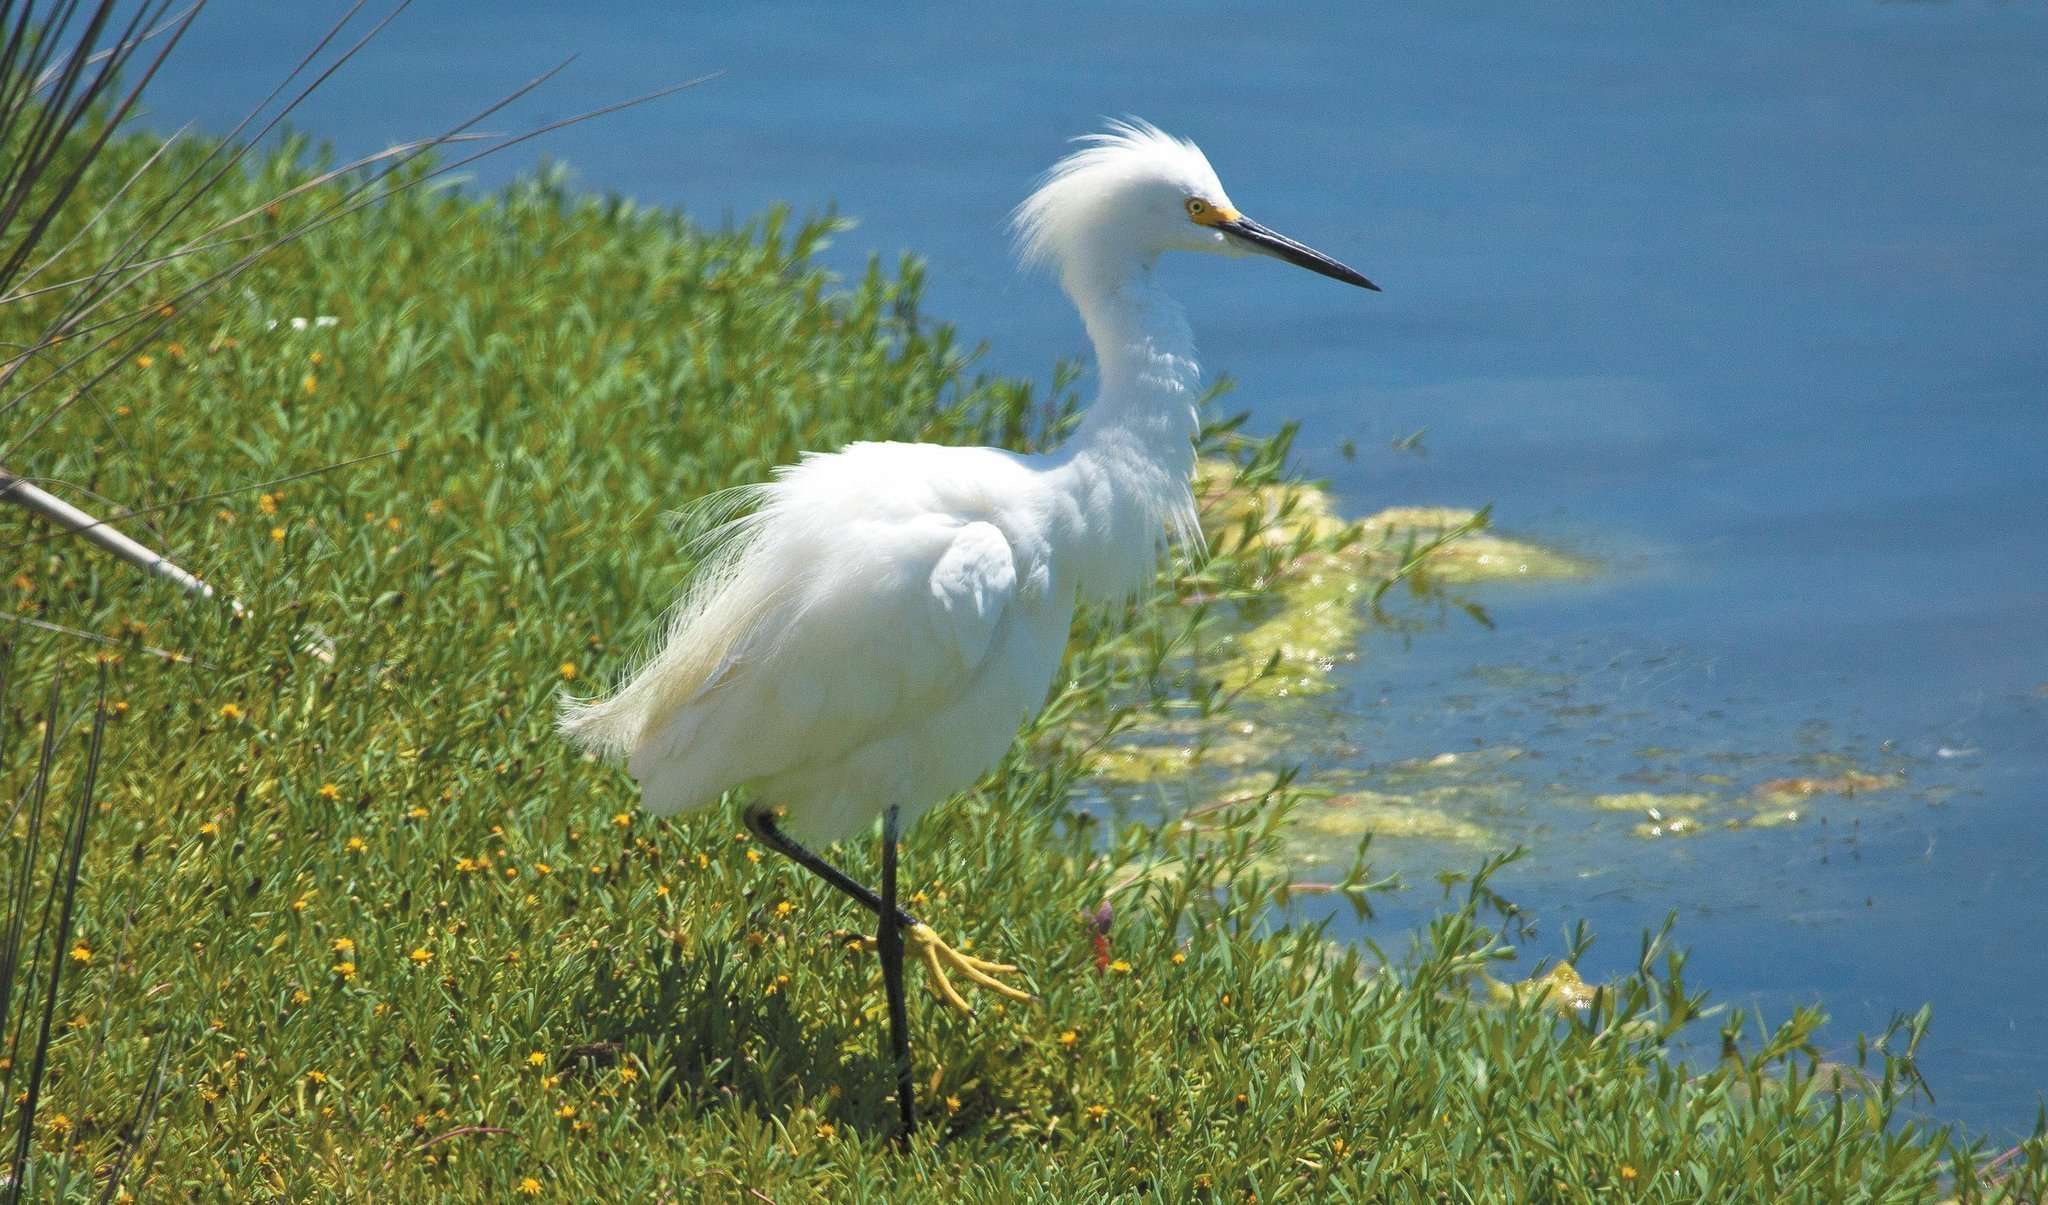 Elegant egrets easy to spot - The San Diego Union-Tribune